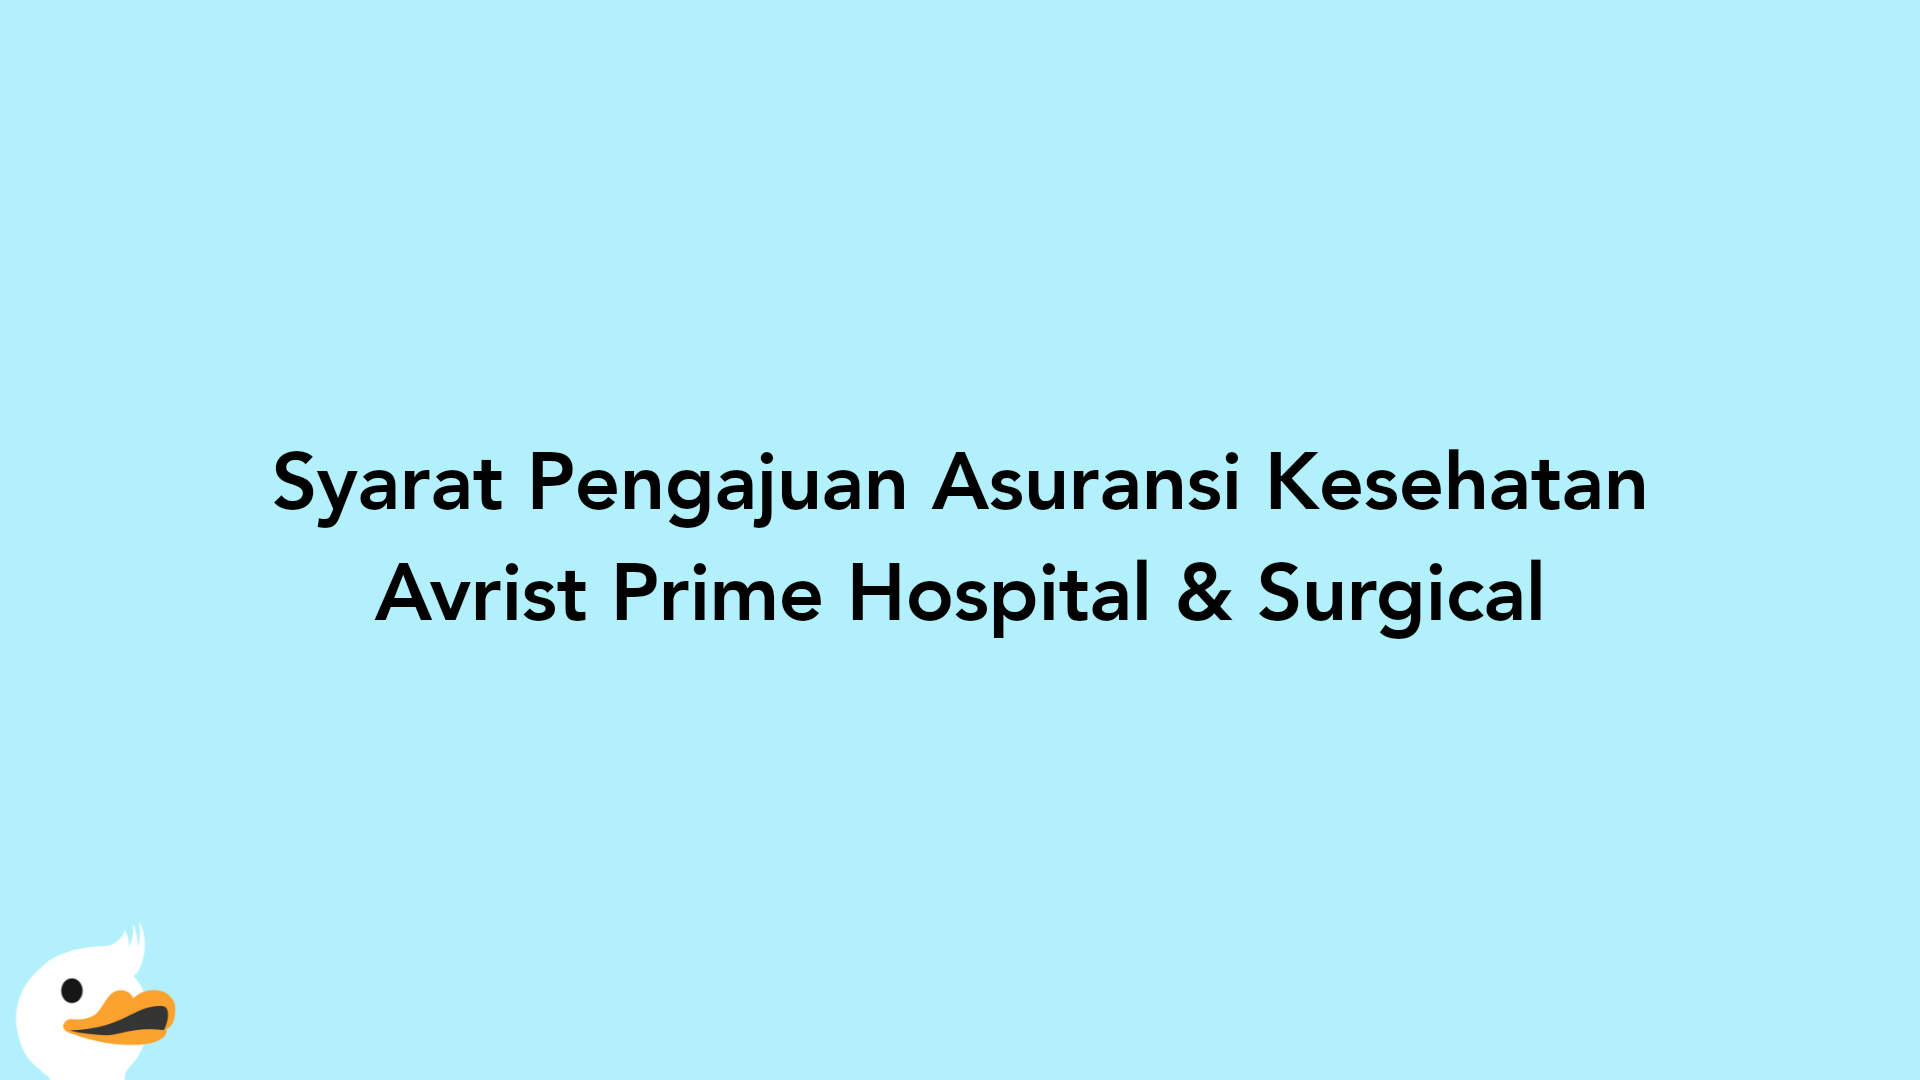 Syarat Pengajuan Asuransi Kesehatan Avrist Prime Hospital & Surgical